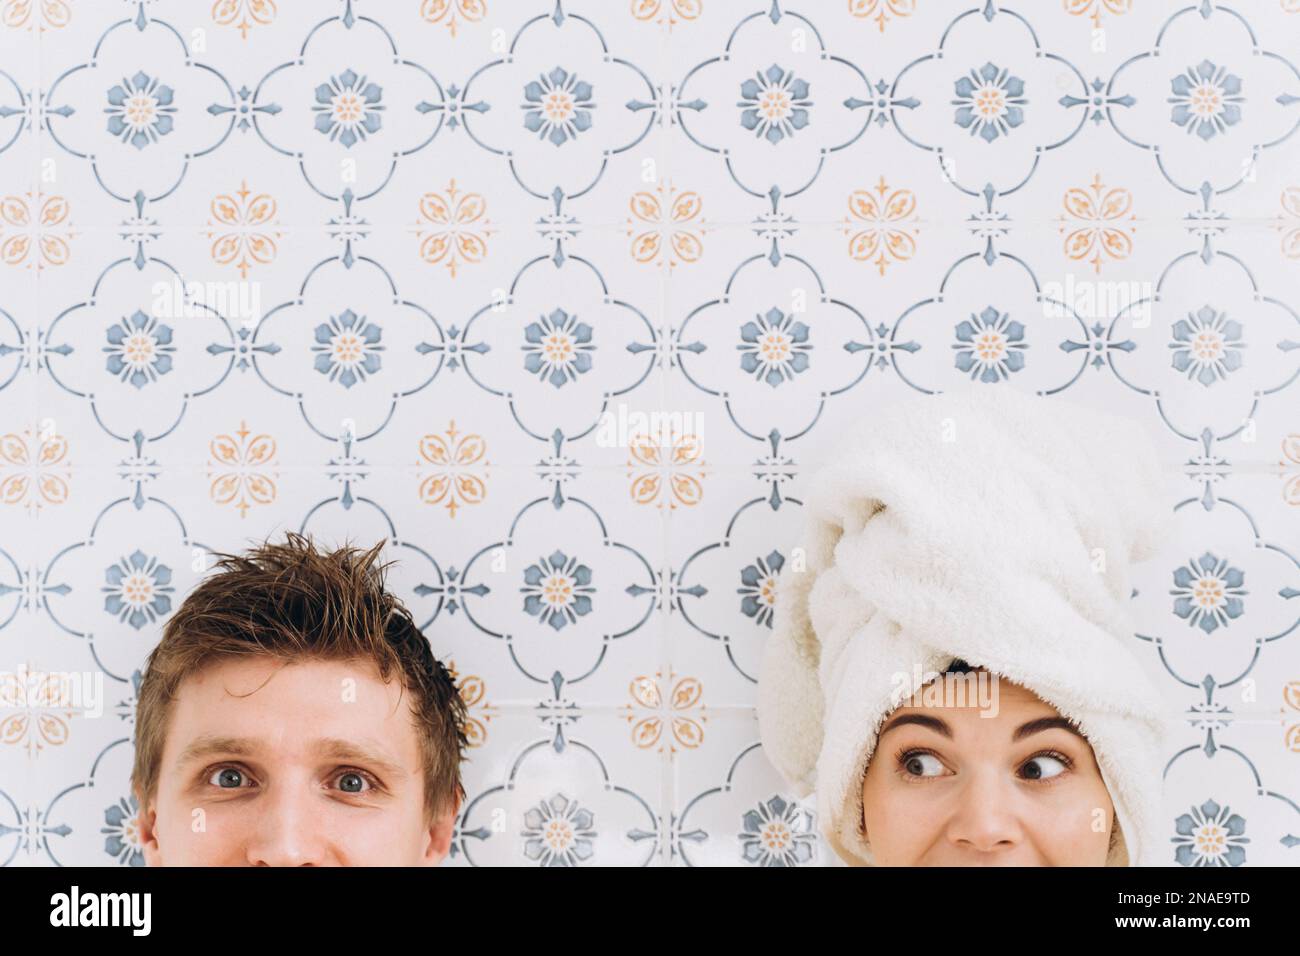 Un gars et une fille avec une serviette sur leur tête, surpris visages Banque D'Images